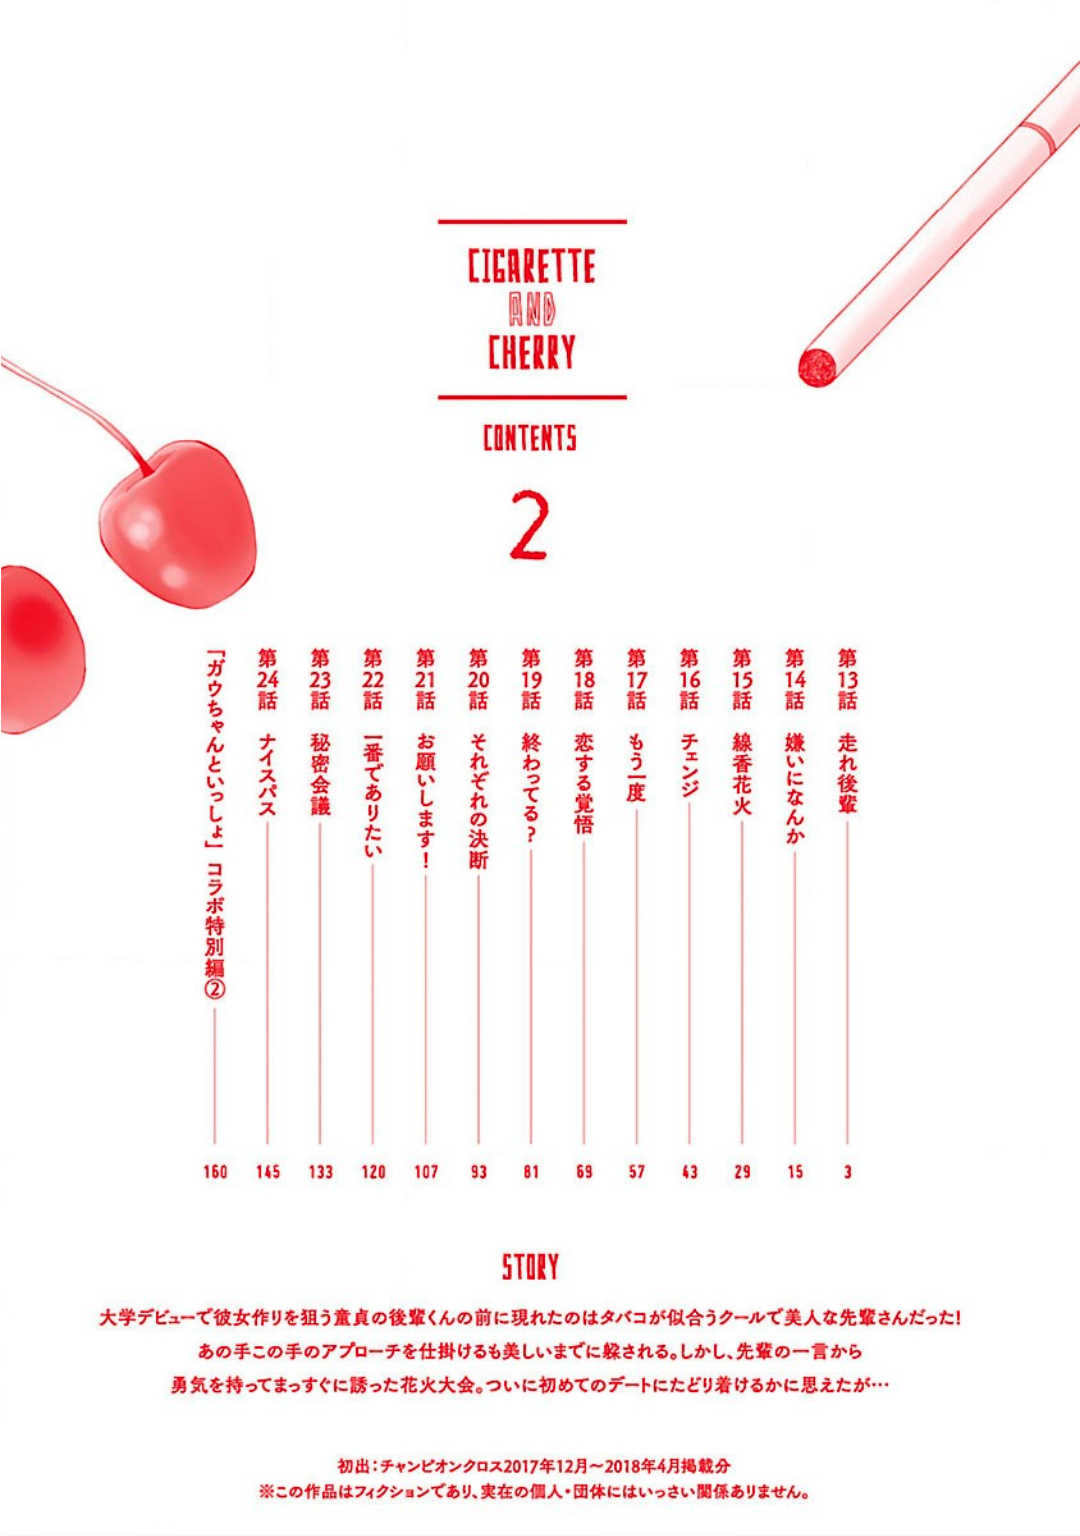 Cigarette & Cherry 13 (3)